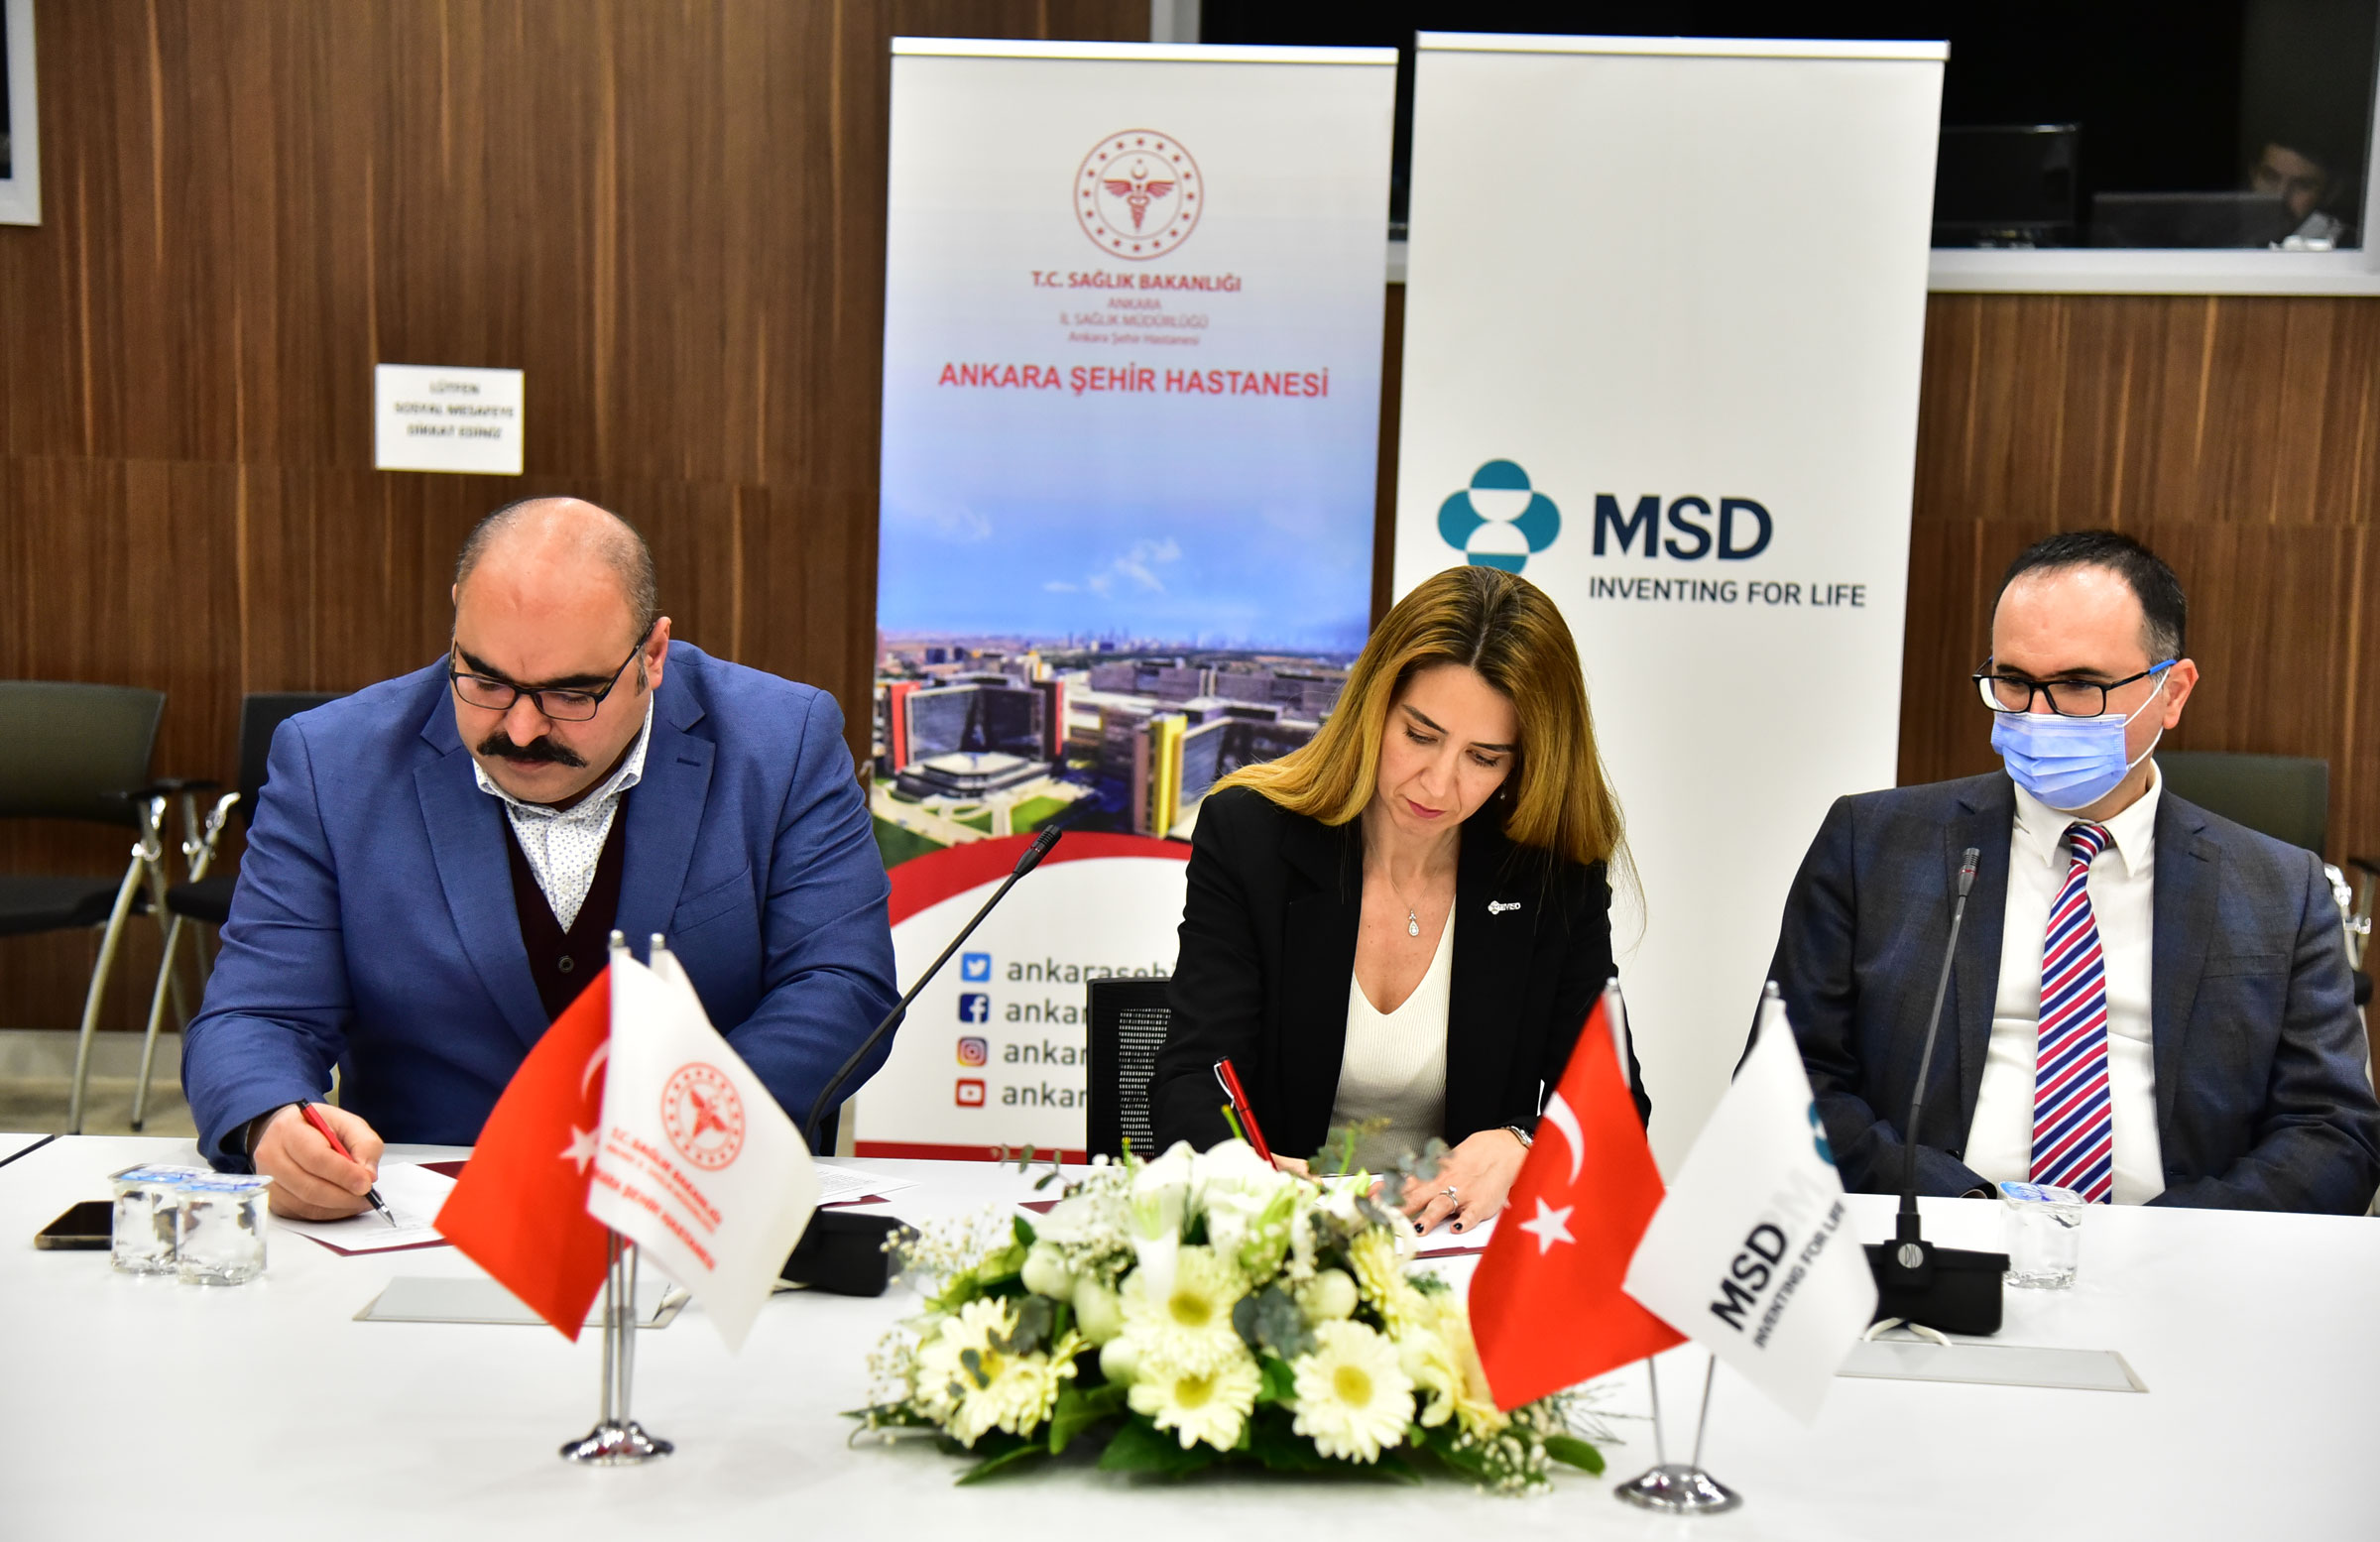 Ankara Şehir hastanesi iş birliğine imza attı